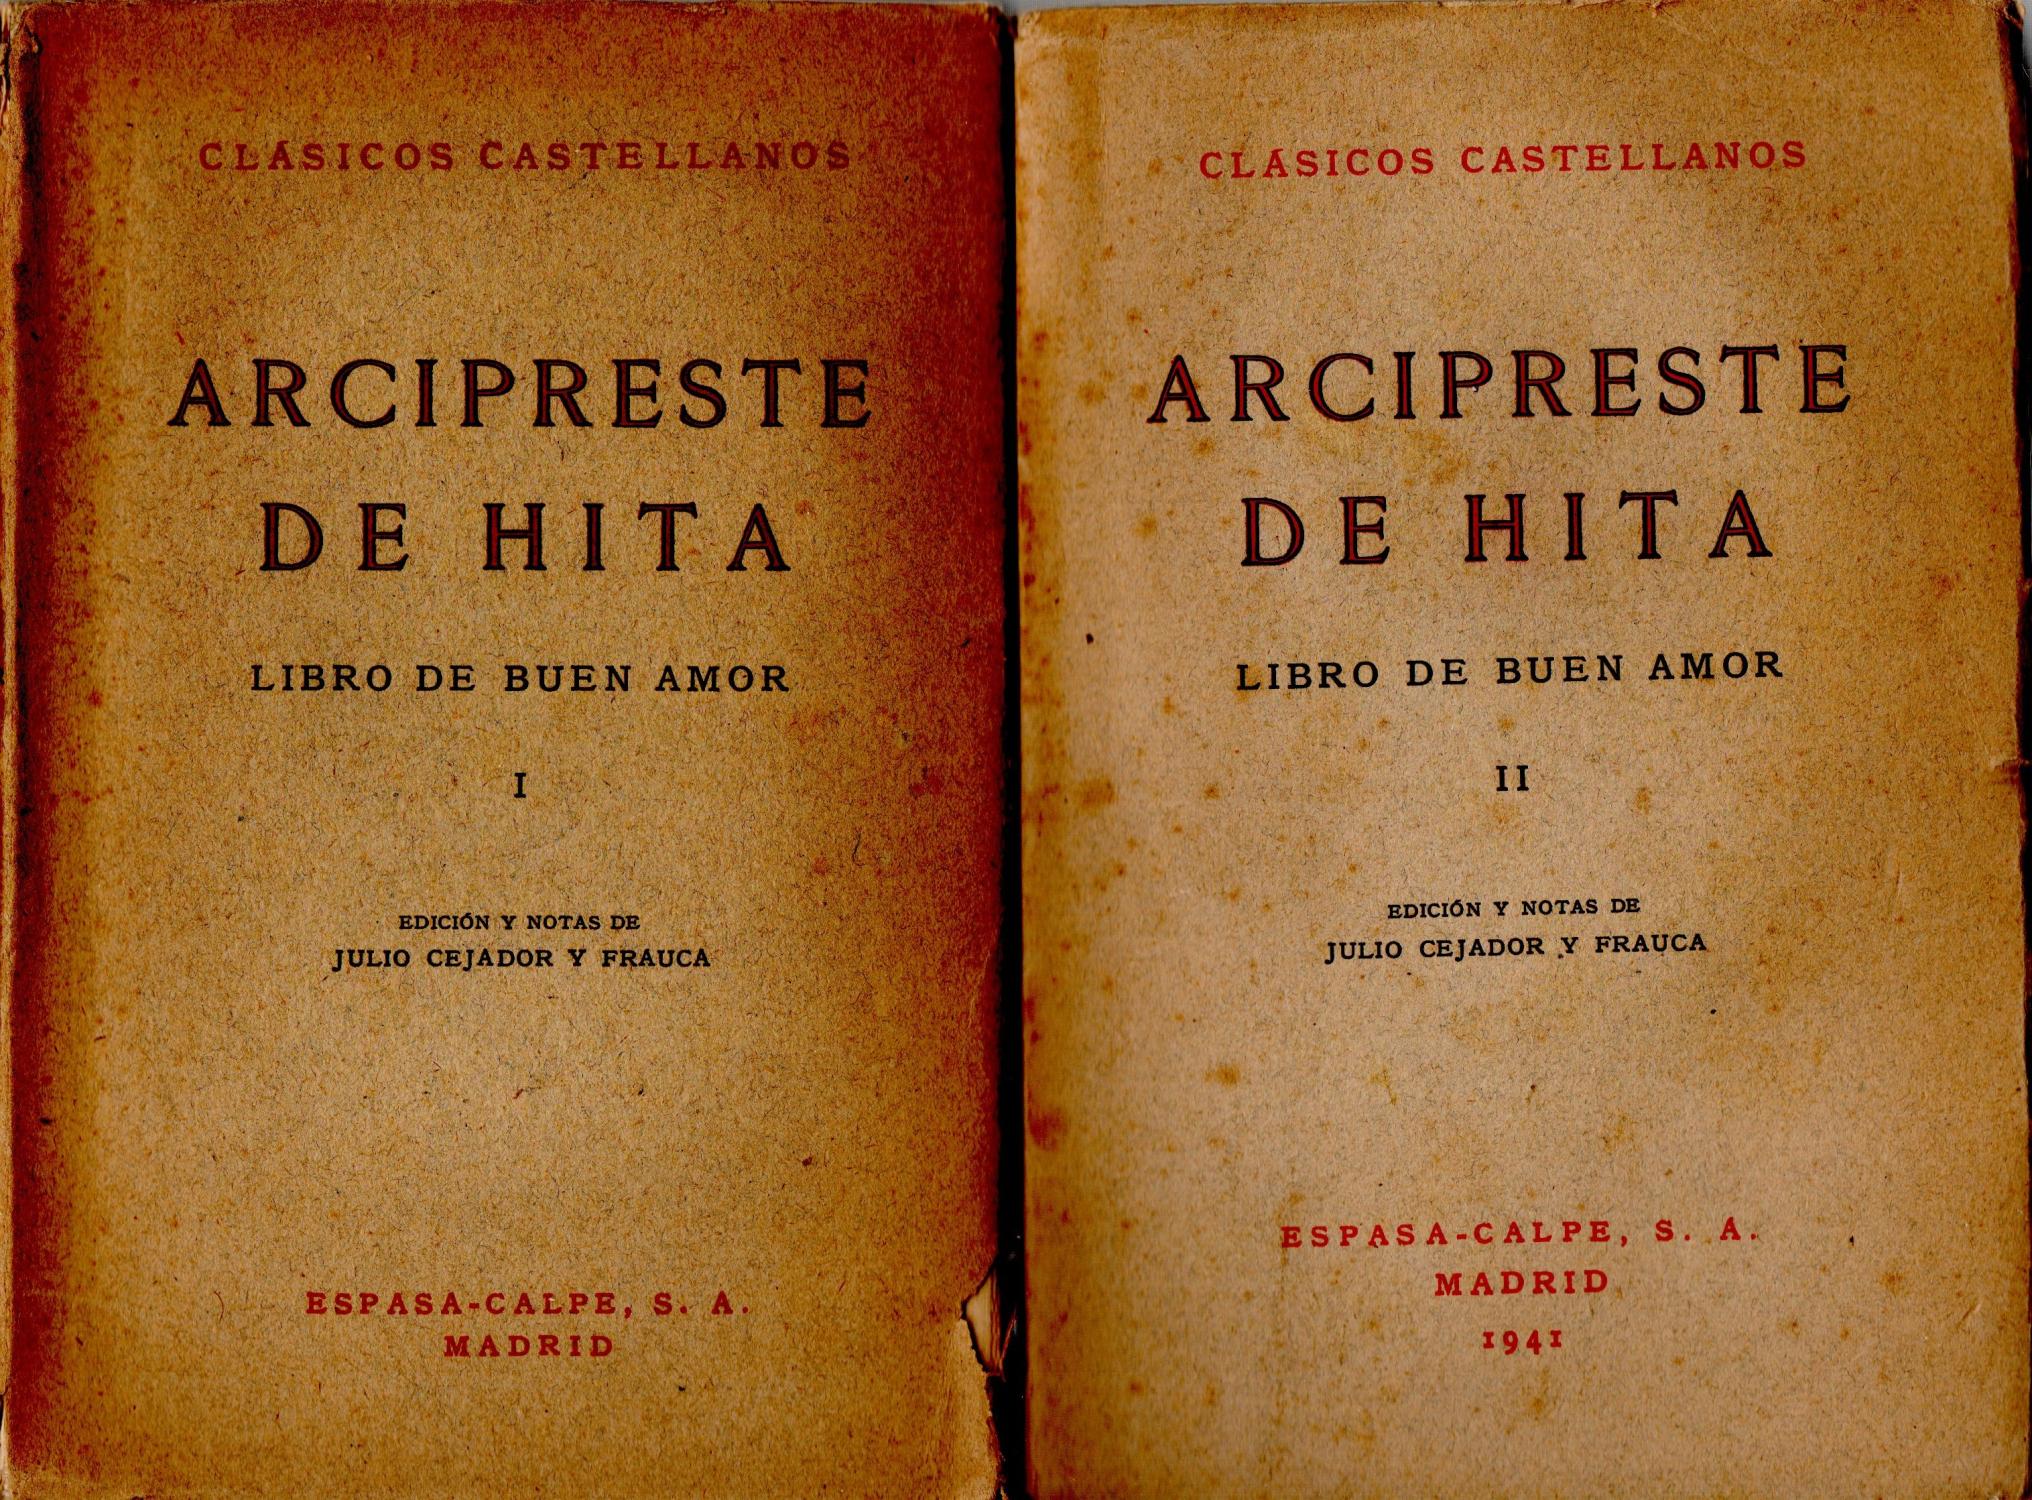 Juan RUIZ ,arcipreste de hita,libro de buen amor.-2 volumes- by Edicion ...